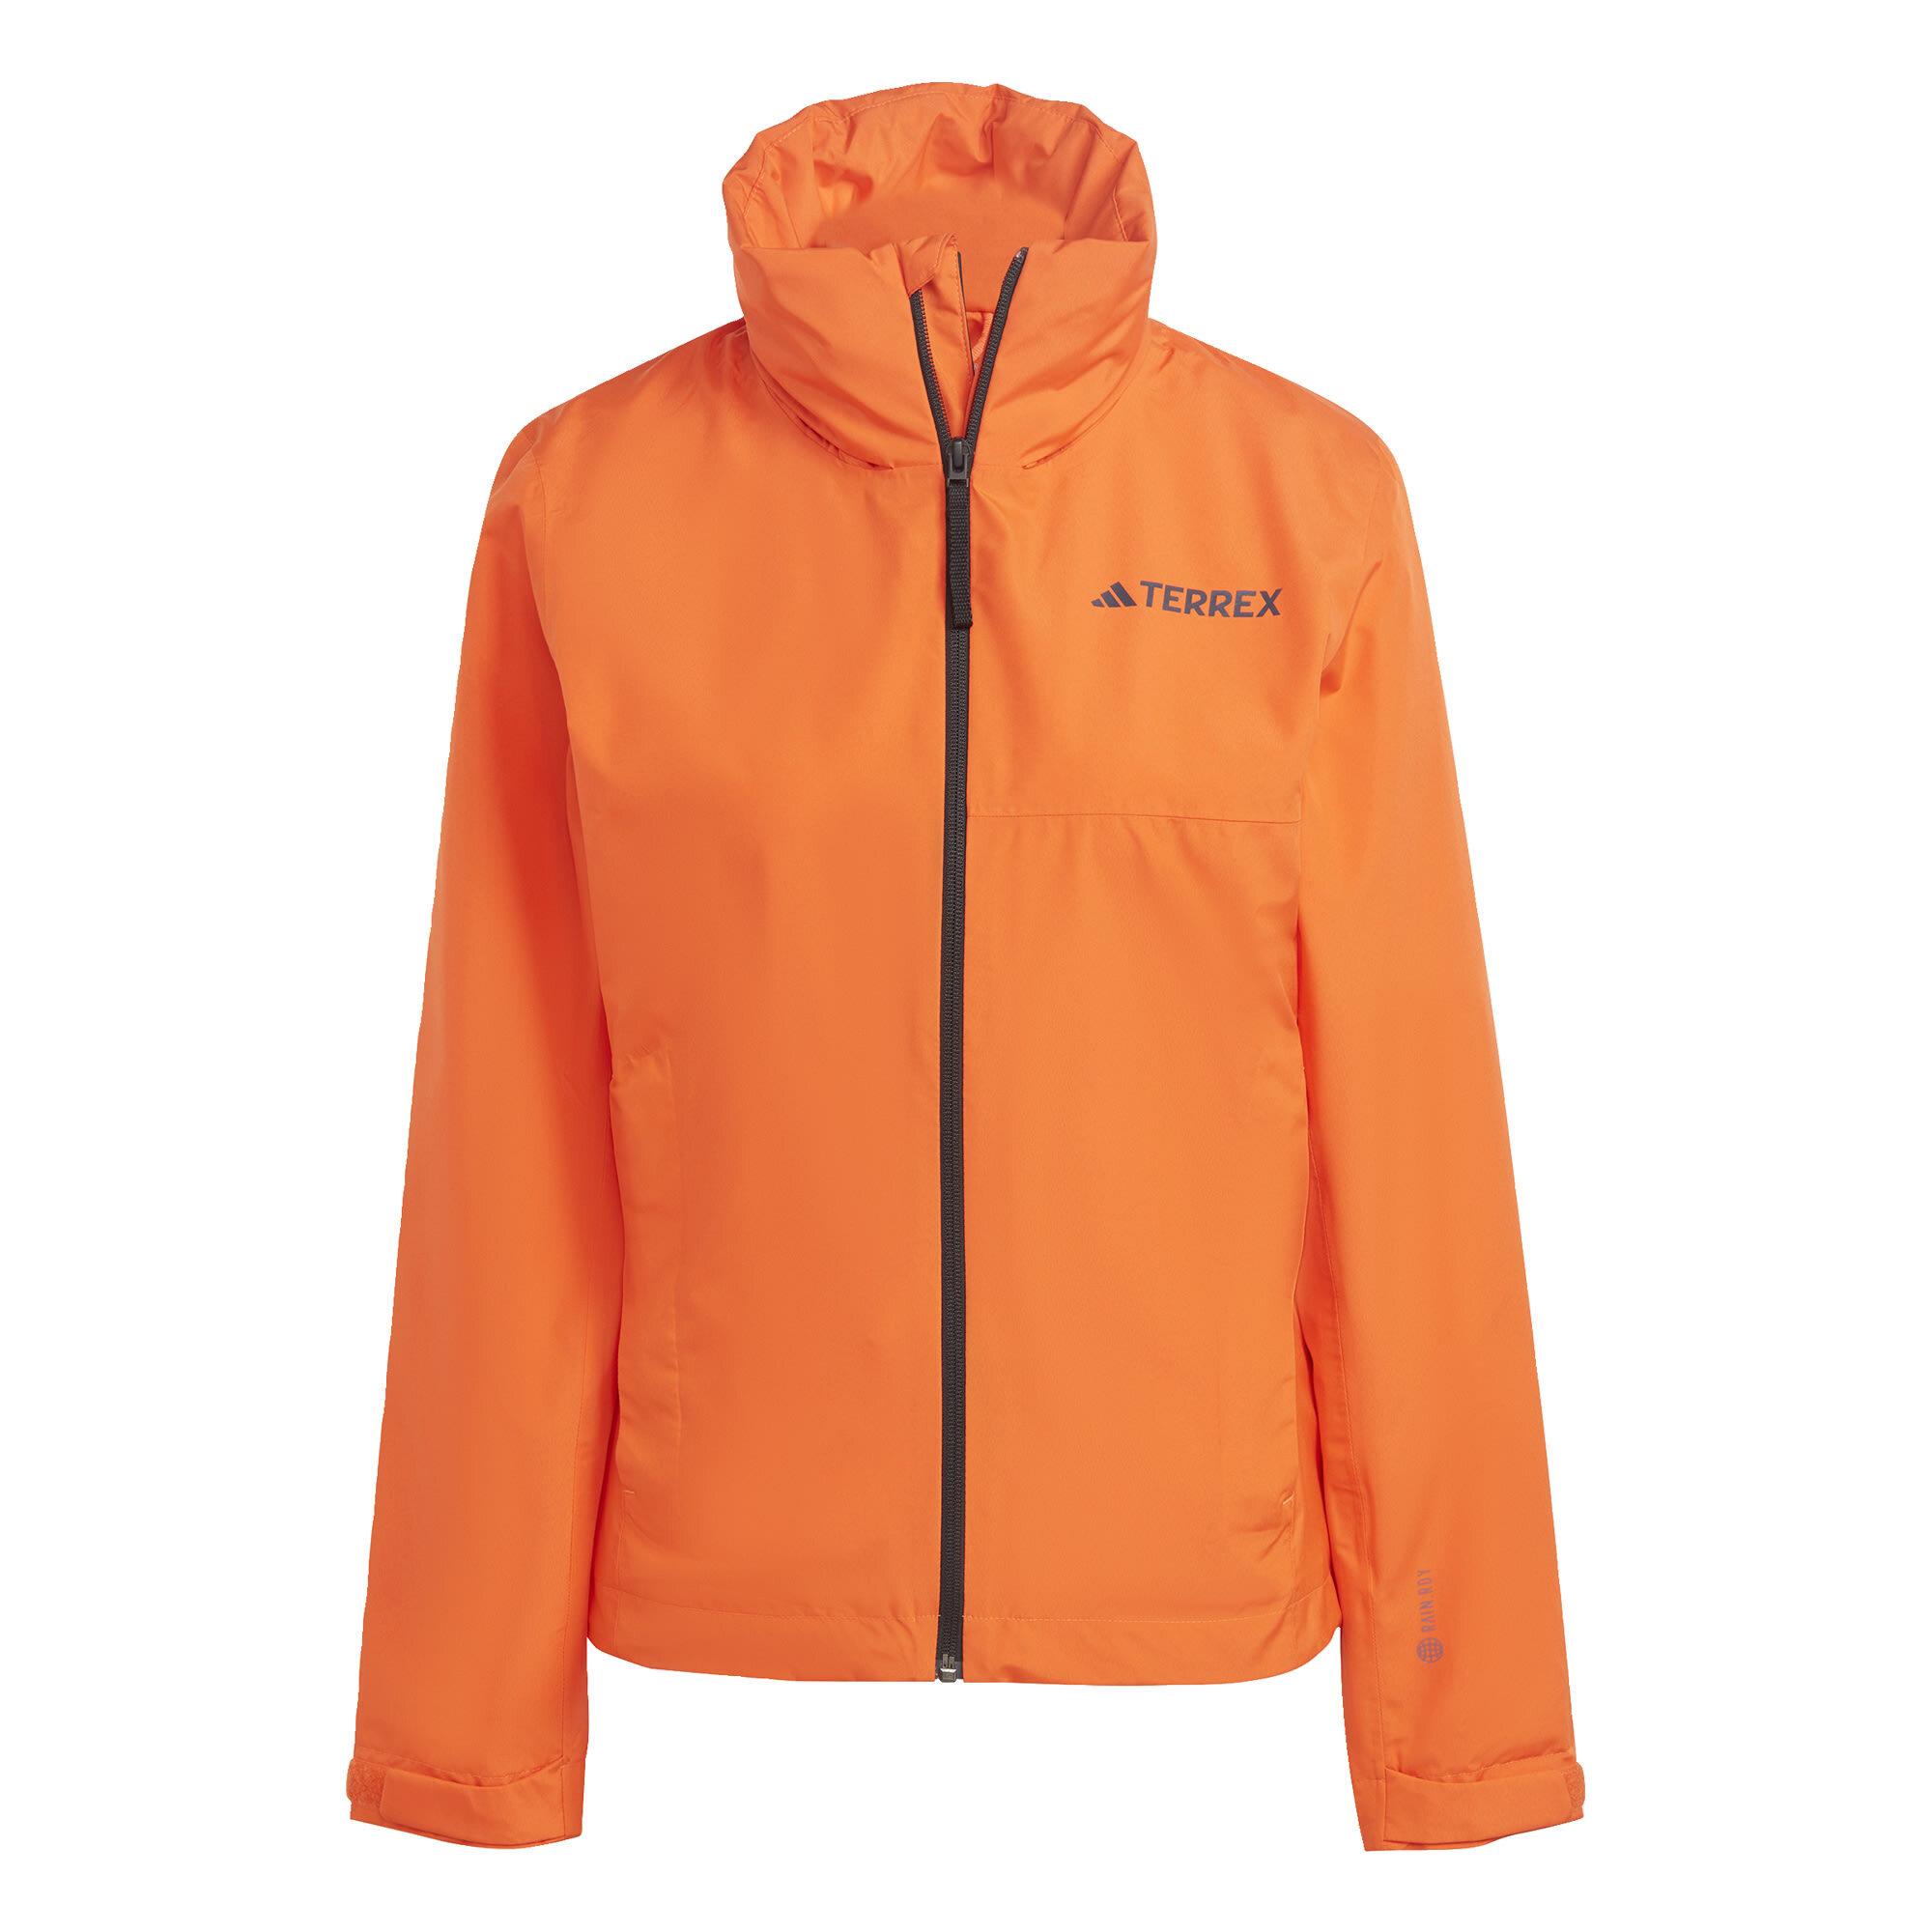 Adidas TERREX Multi Damen Orange im Regenjacke Impact Outdoorjacke 2-Layer von Semi Online kaufen SportScheck Shop RAIN.RDY